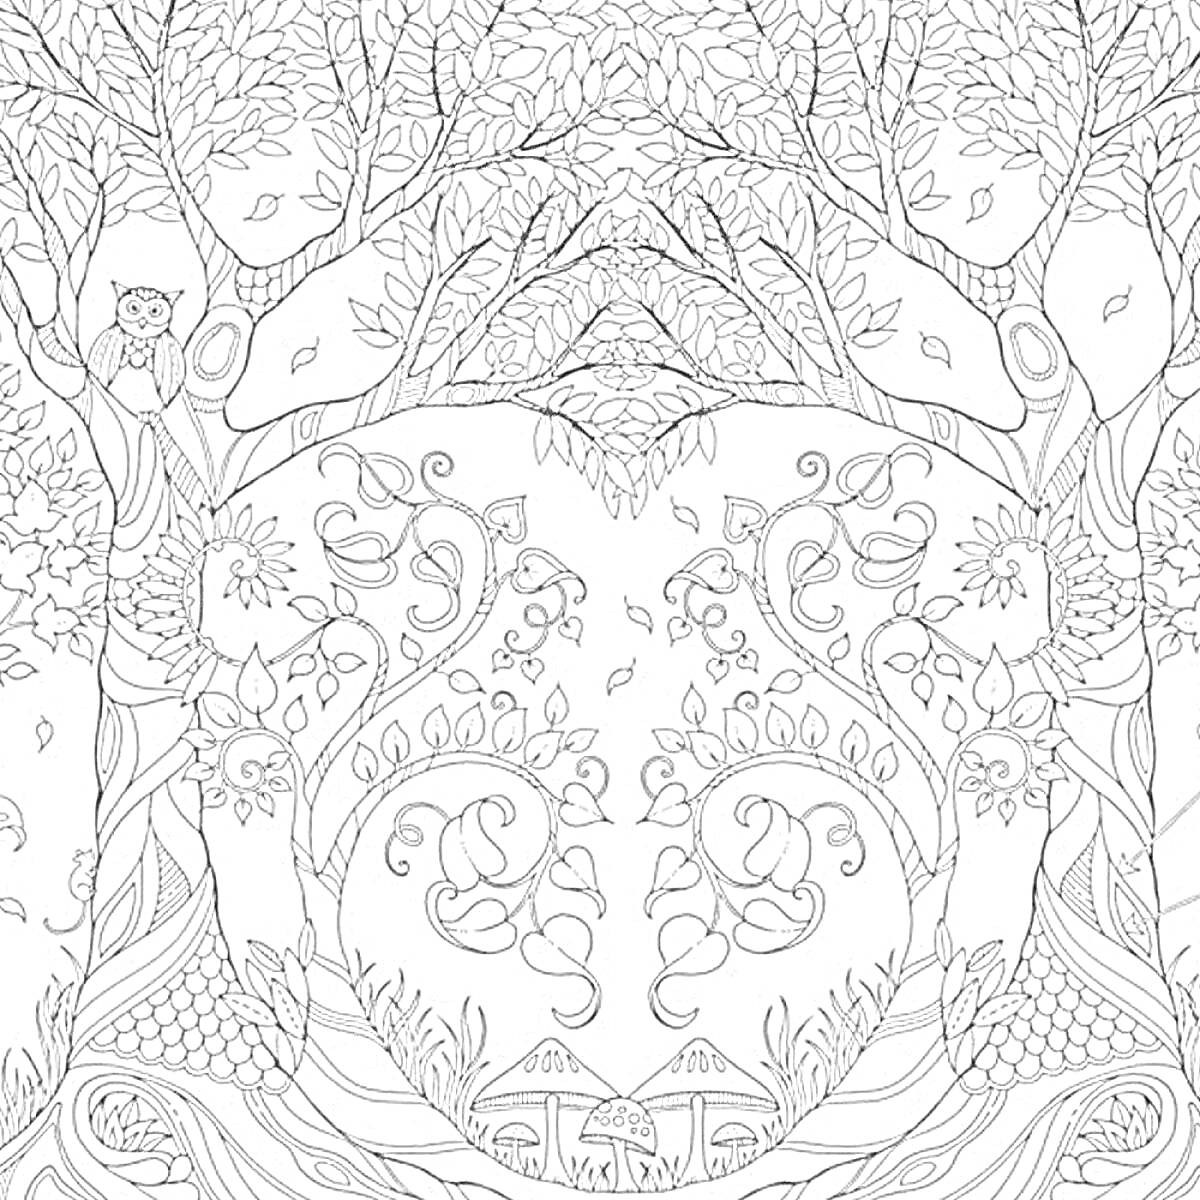 Раскраска Зачарованный лес с совой, деревьями, листьями, цветами, грибами и ветвями